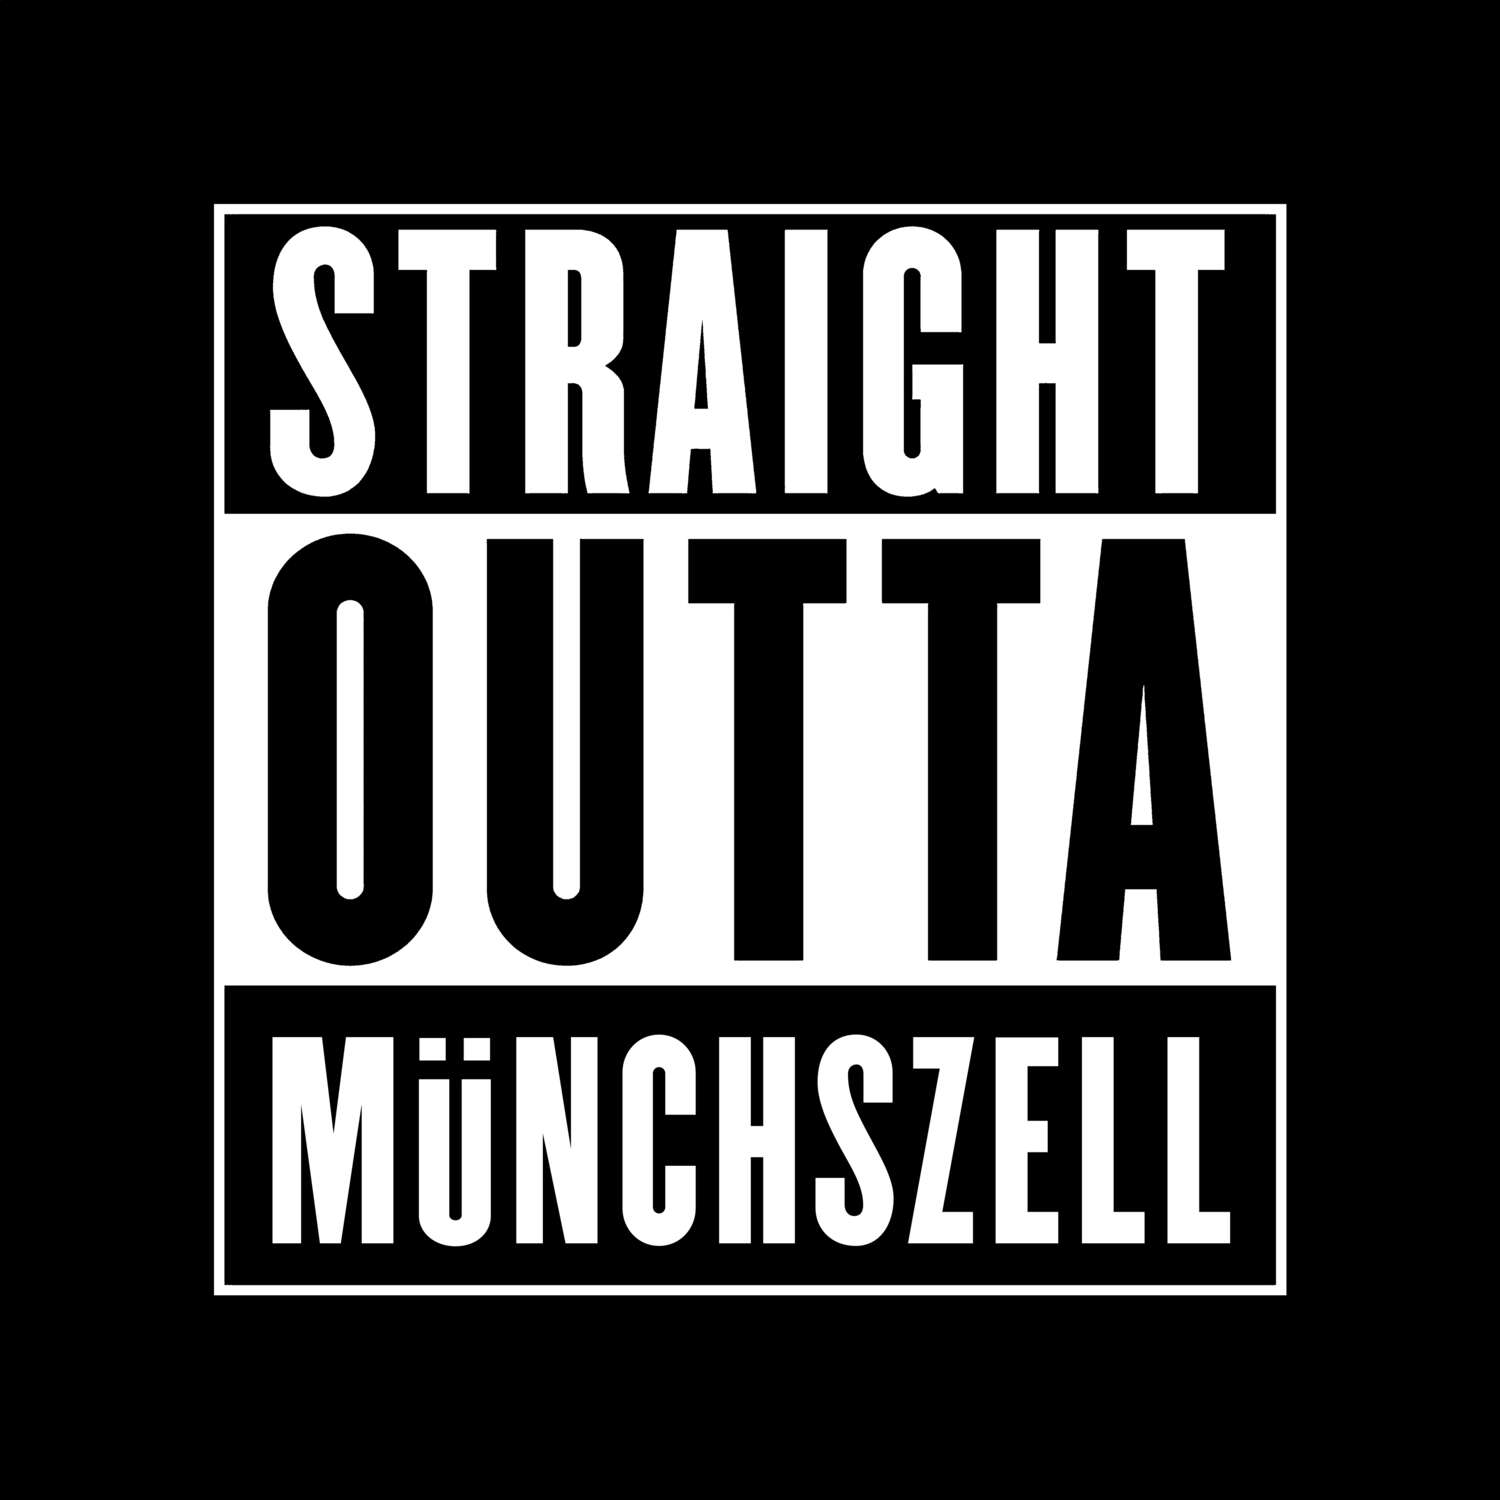 Münchszell T-Shirt »Straight Outta«